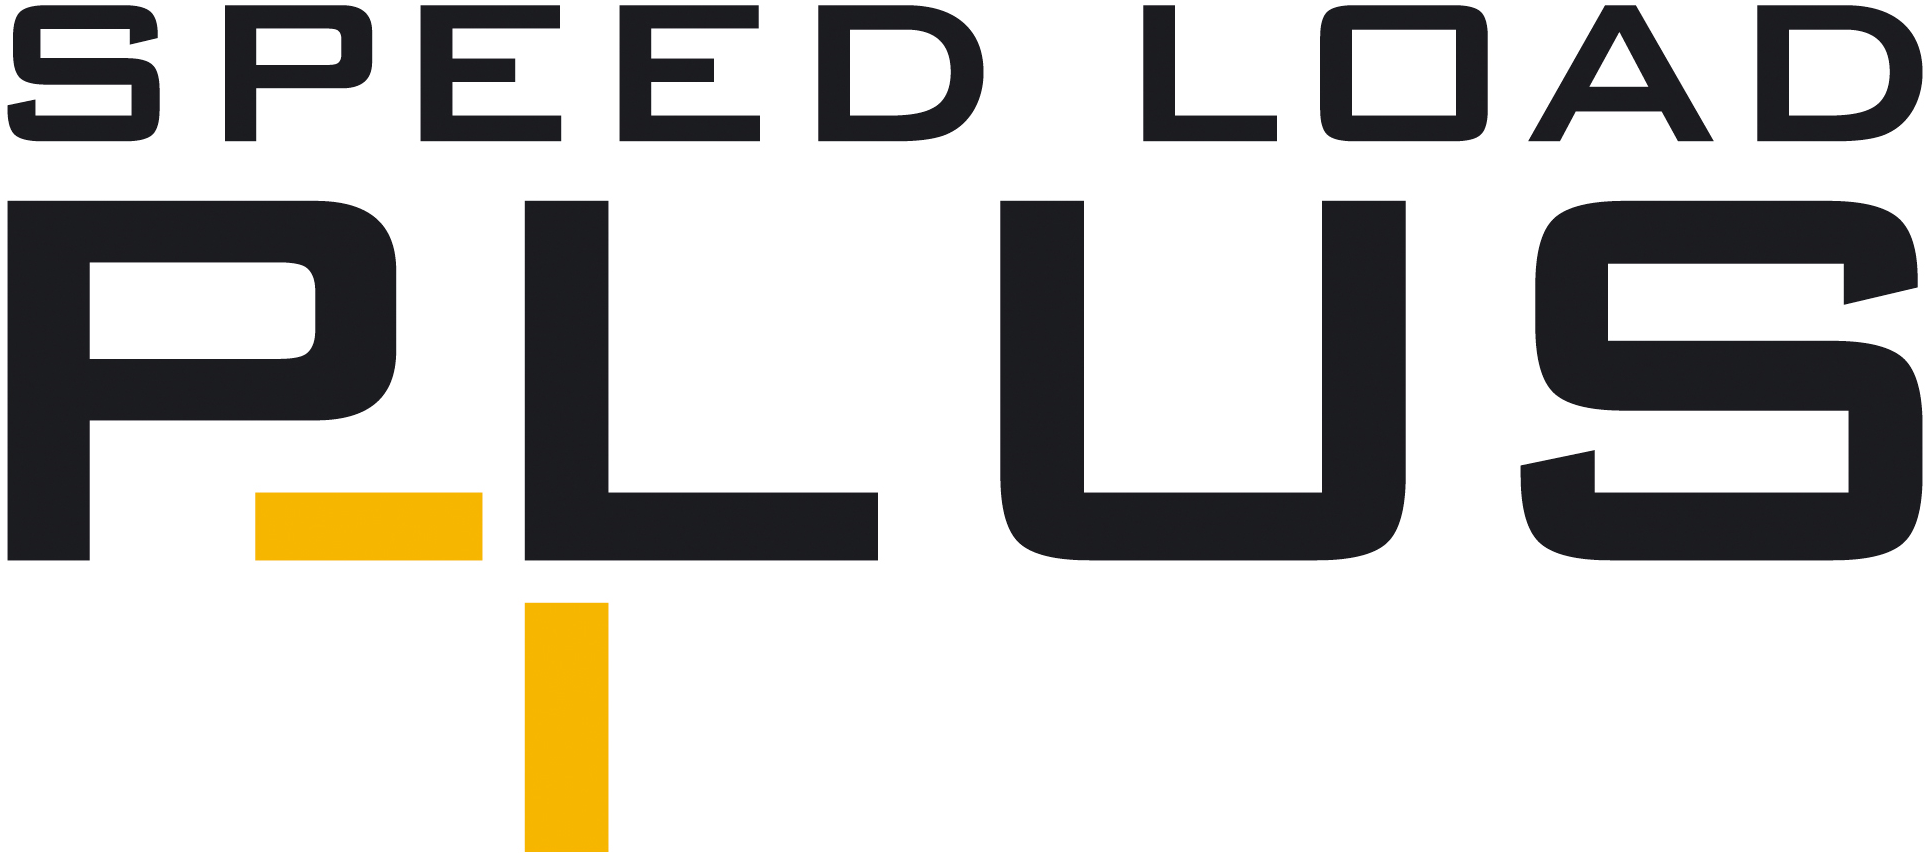 logo opatentowanego systemu szybkiego ładowania